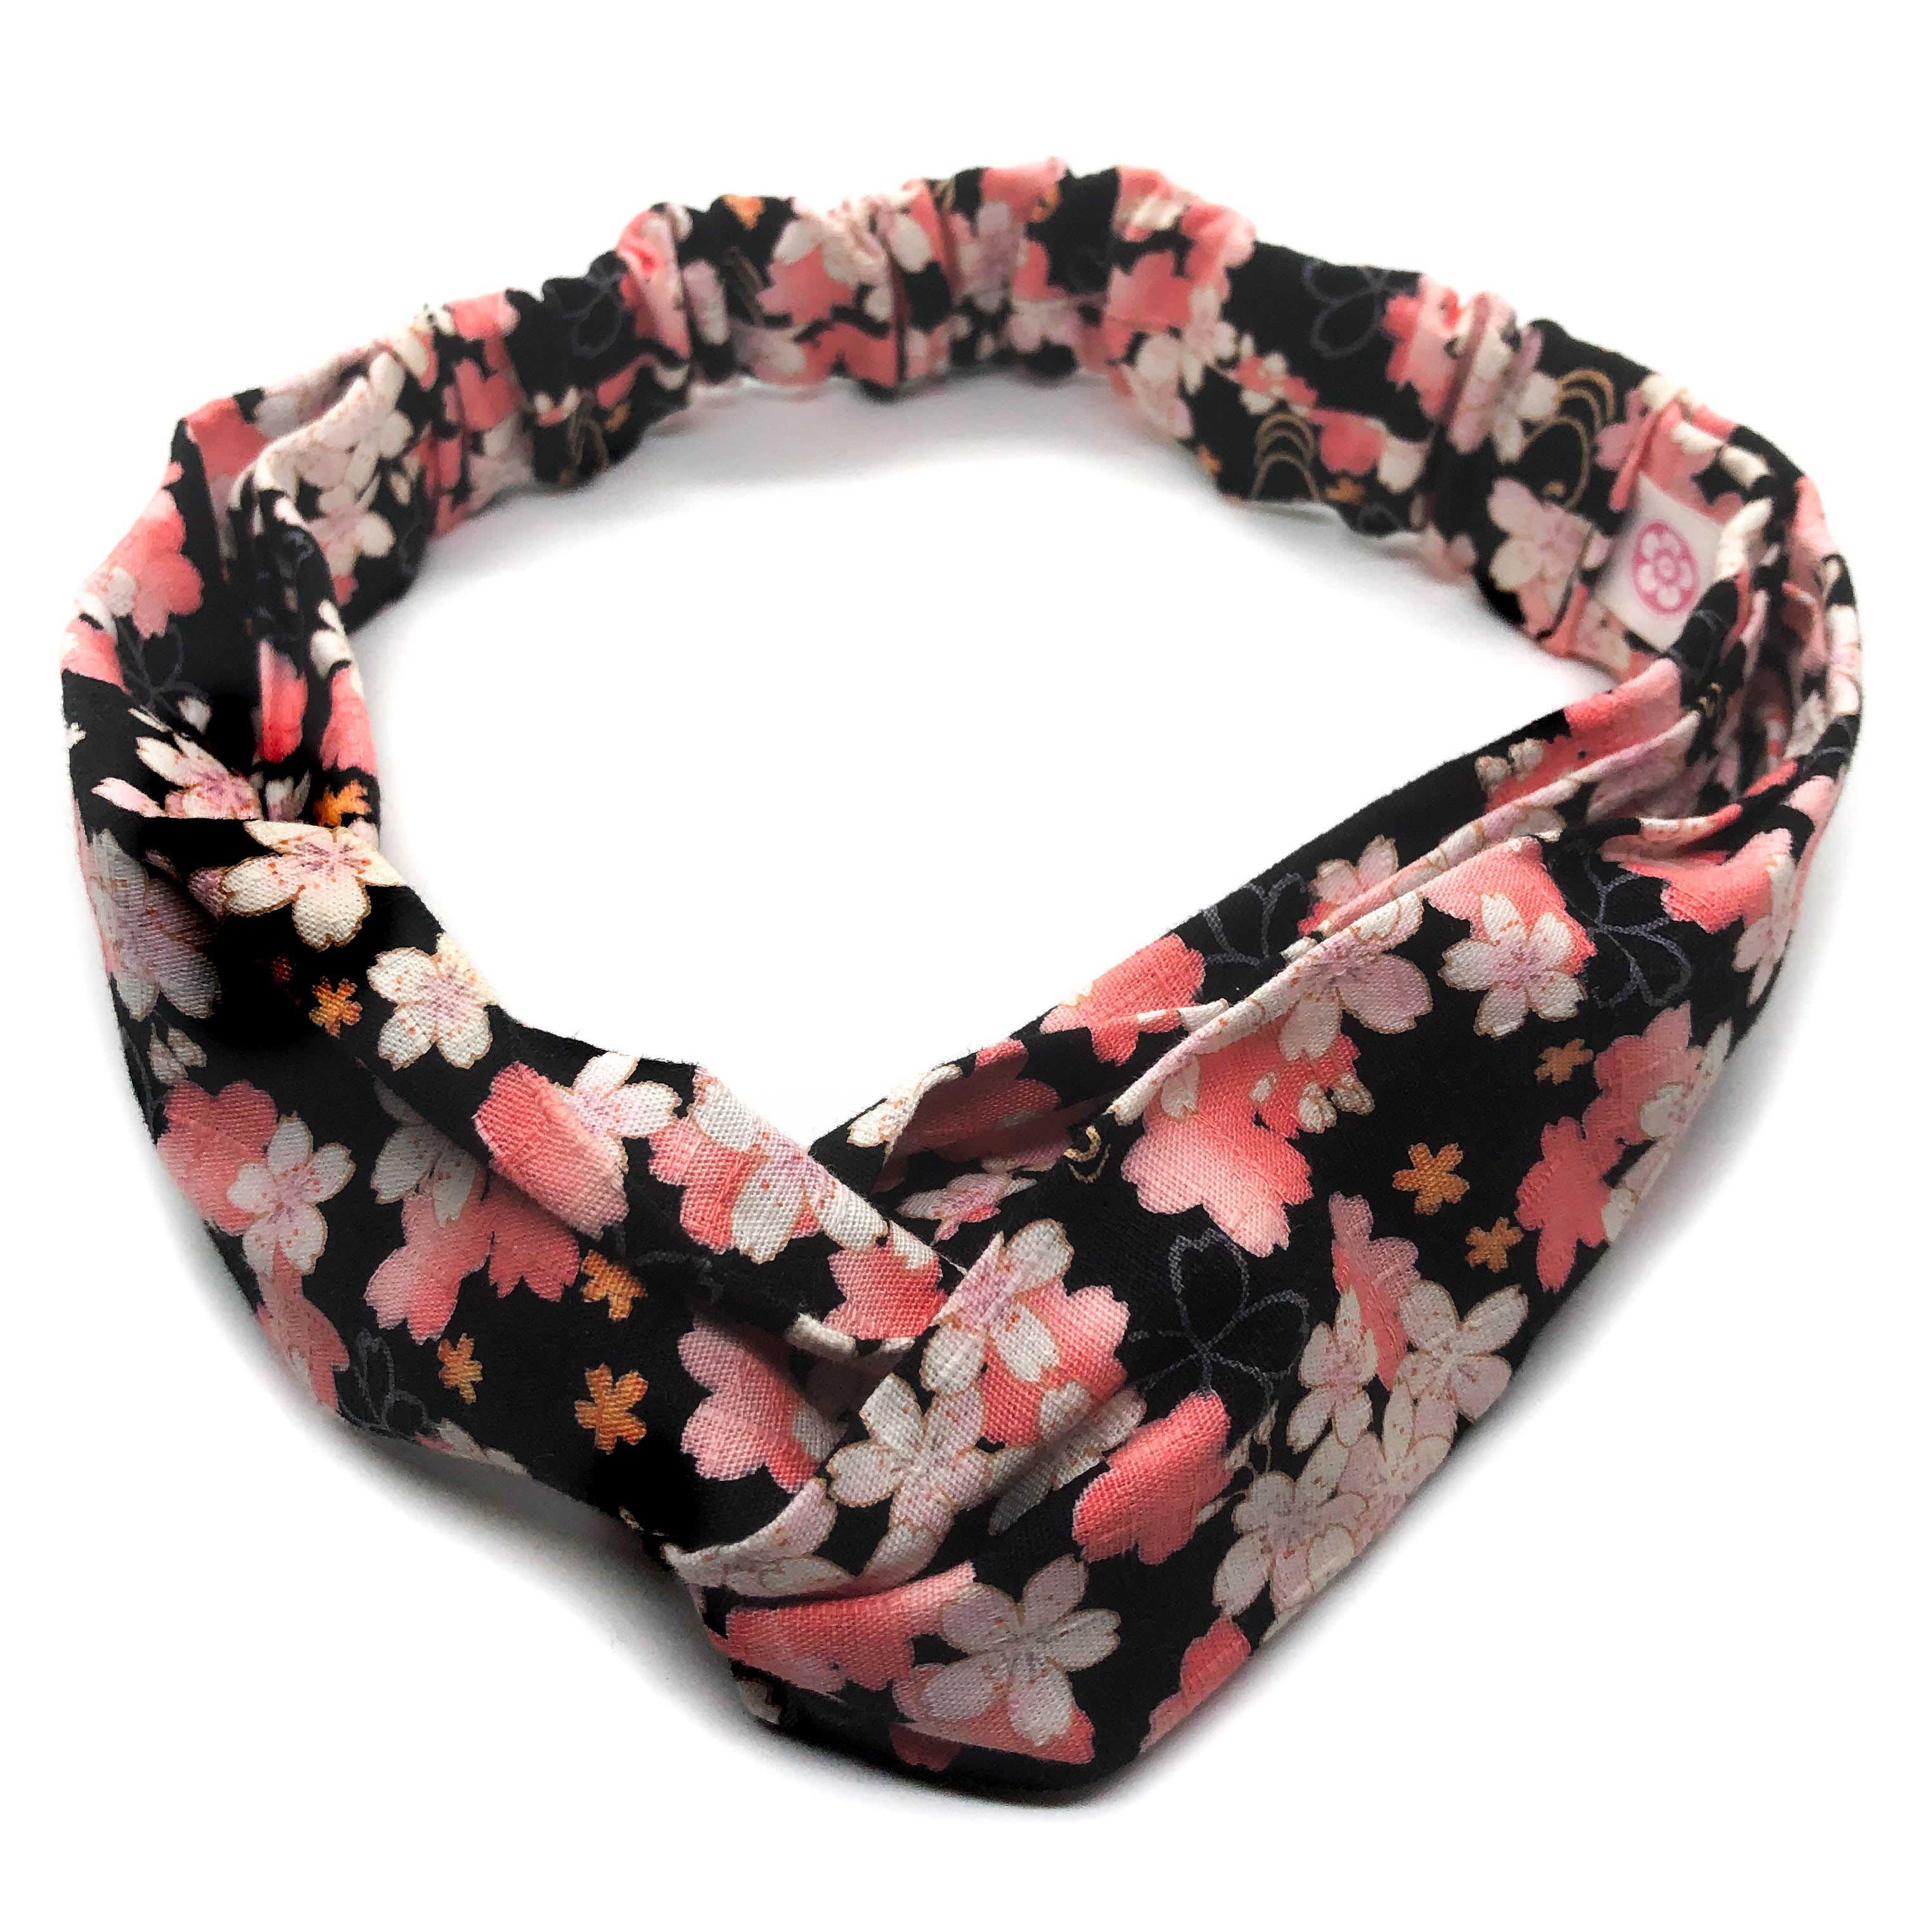 Purple Sakura Print Japanese Headband / Cotton fabric Headband